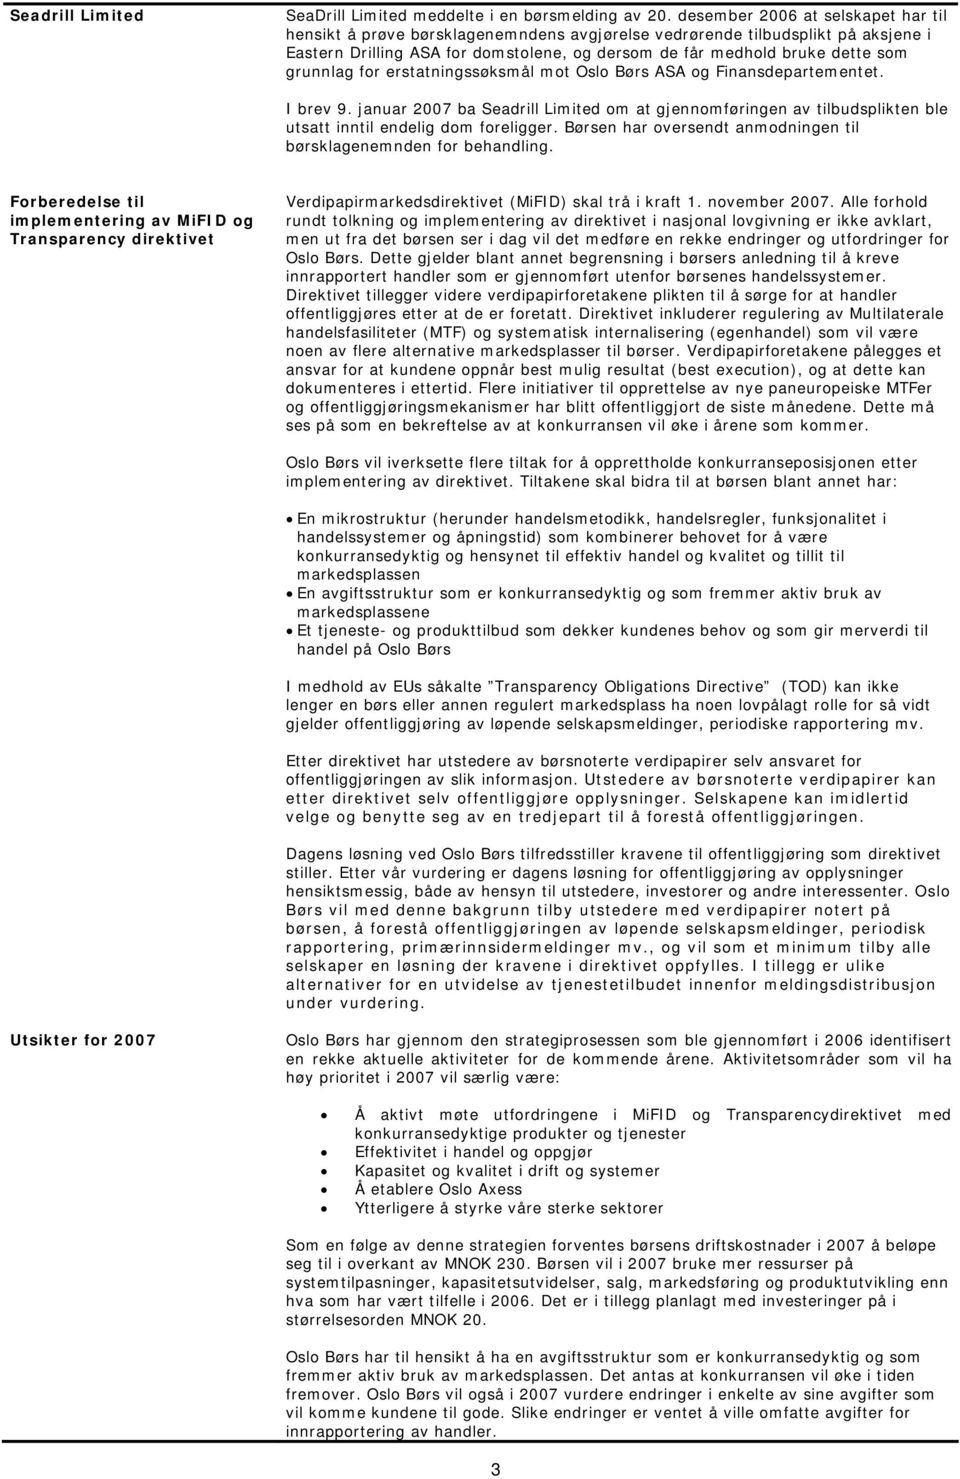 grunnlag for erstatningssøksmål mot Oslo Børs ASA og Finansdepartementet. I brev 9. januar 2007 ba Seadrill Limited om at gjennomføringen av tilbudsplikten ble utsatt inntil endelig dom foreligger.